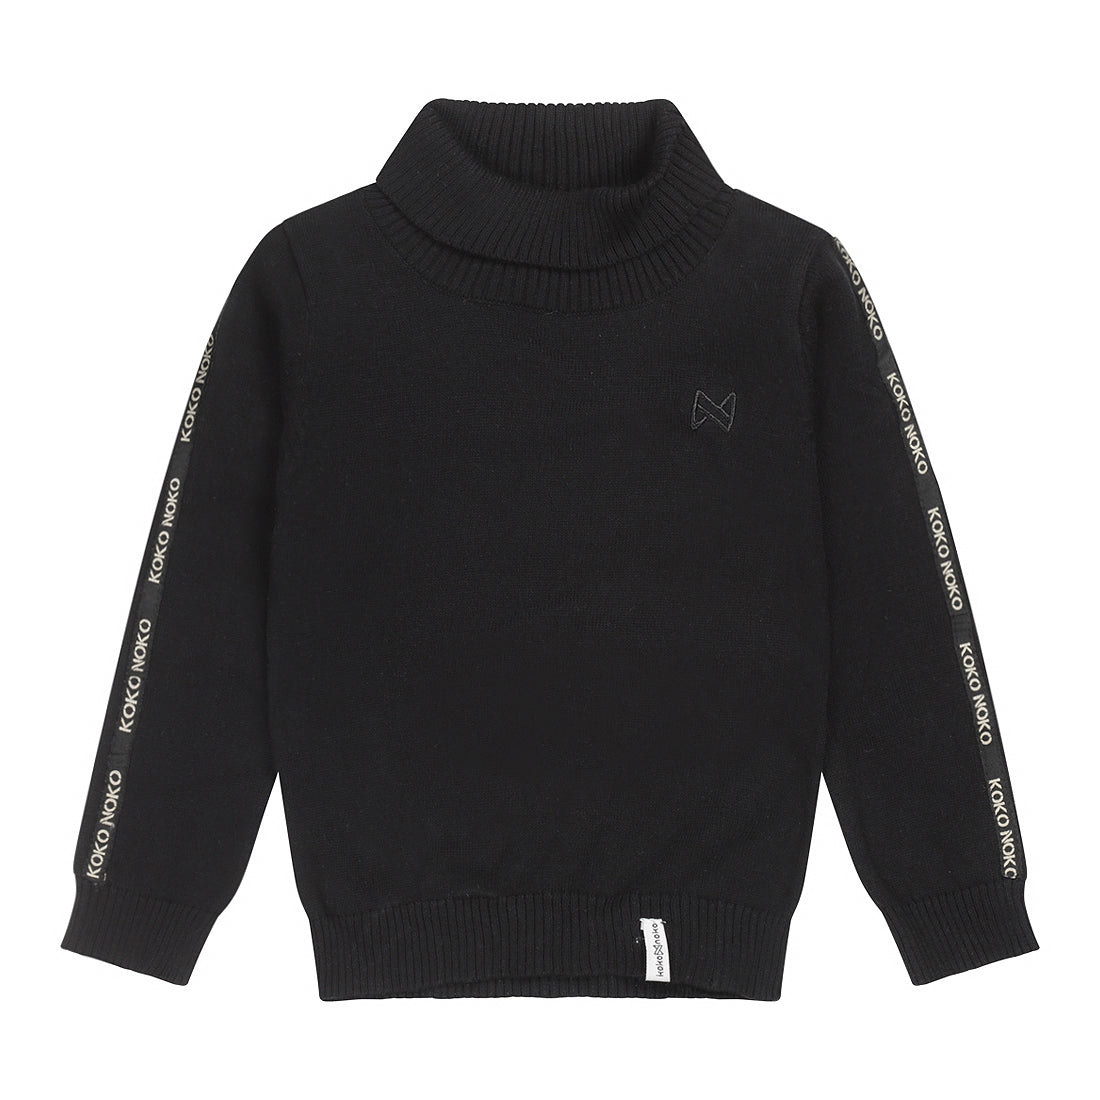 Jongens Sweater ls with rollneck van Koko Noko in de kleur Black in maat 128.